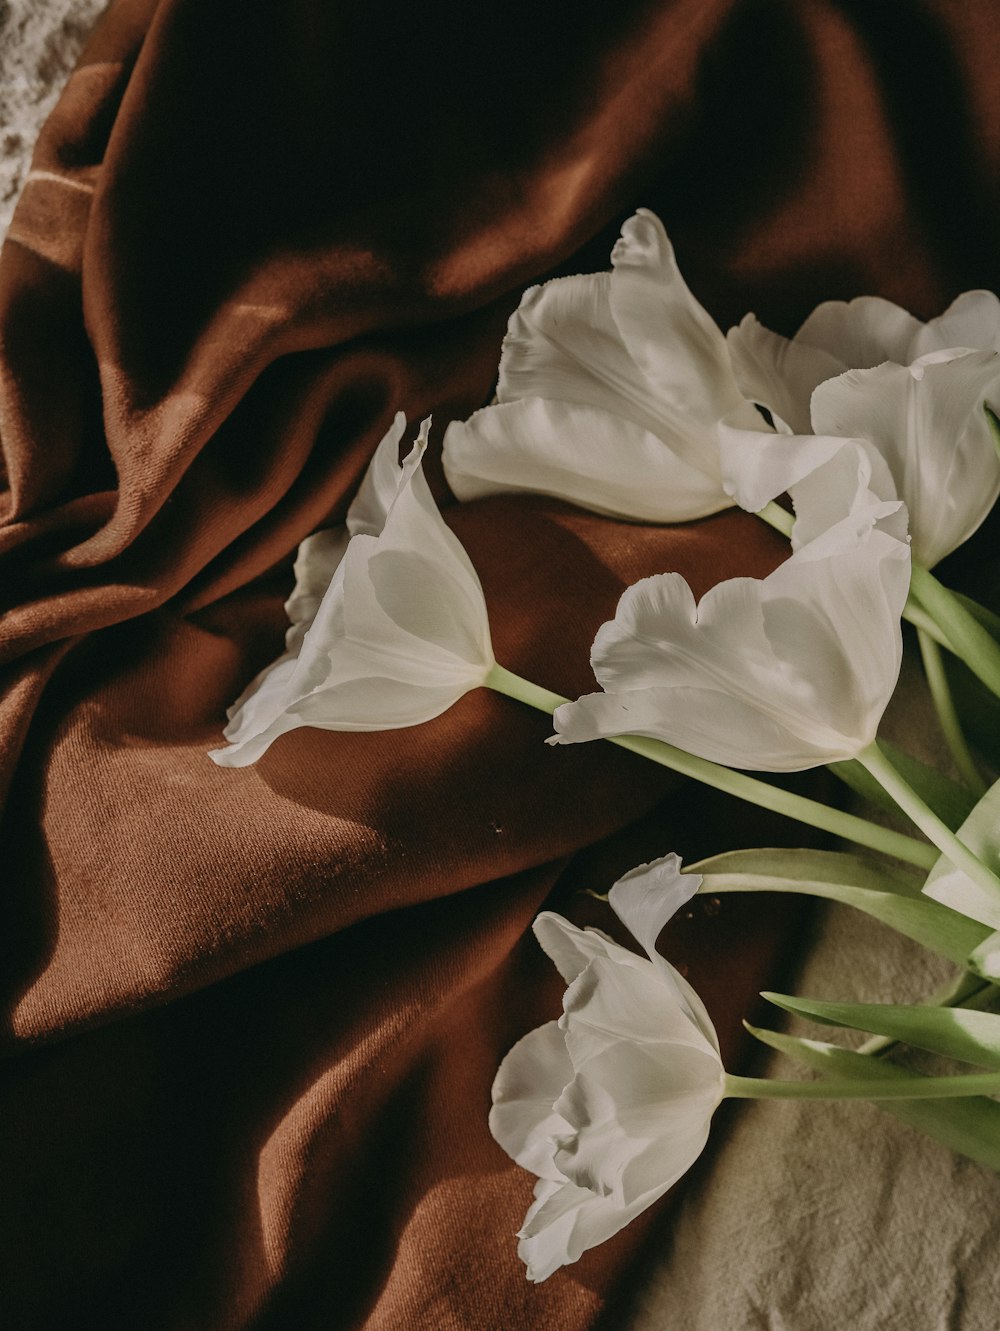 Imágenes de Aesthetic Flowers | Descarga imágenes gratuitas en Unsplash